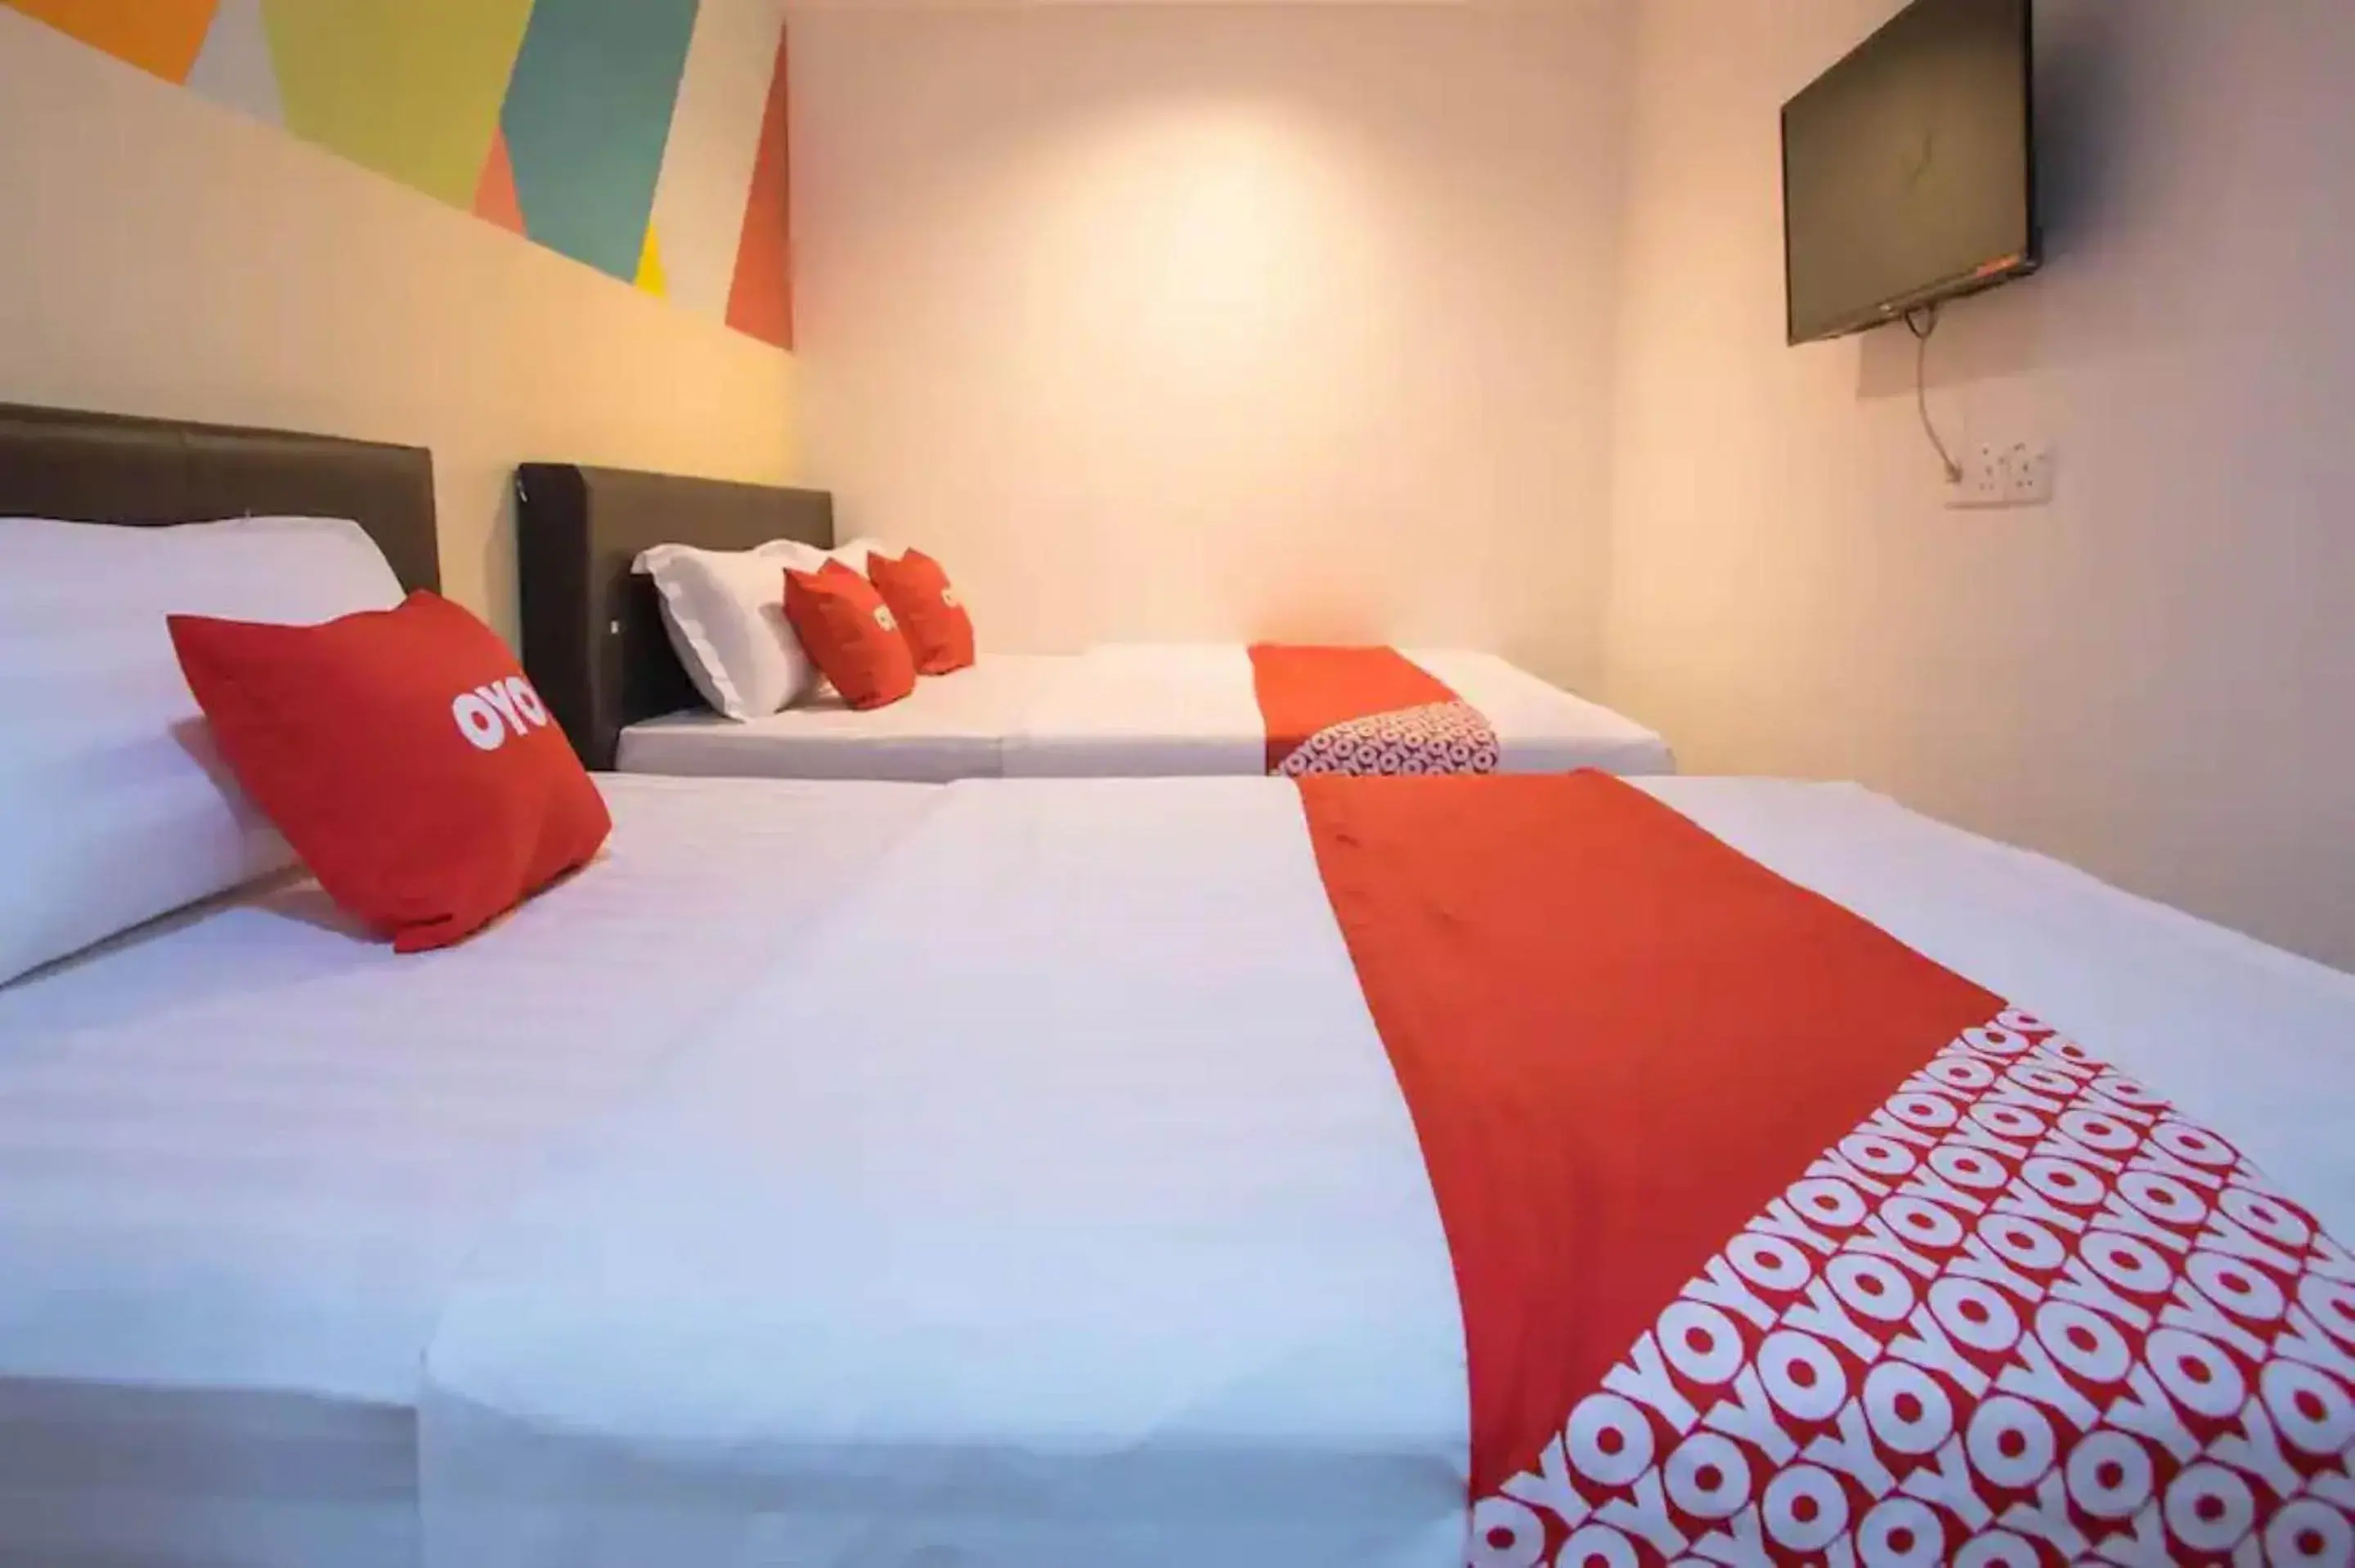 Bedroom in OYO 90281 Hotel Taj seksyen 13